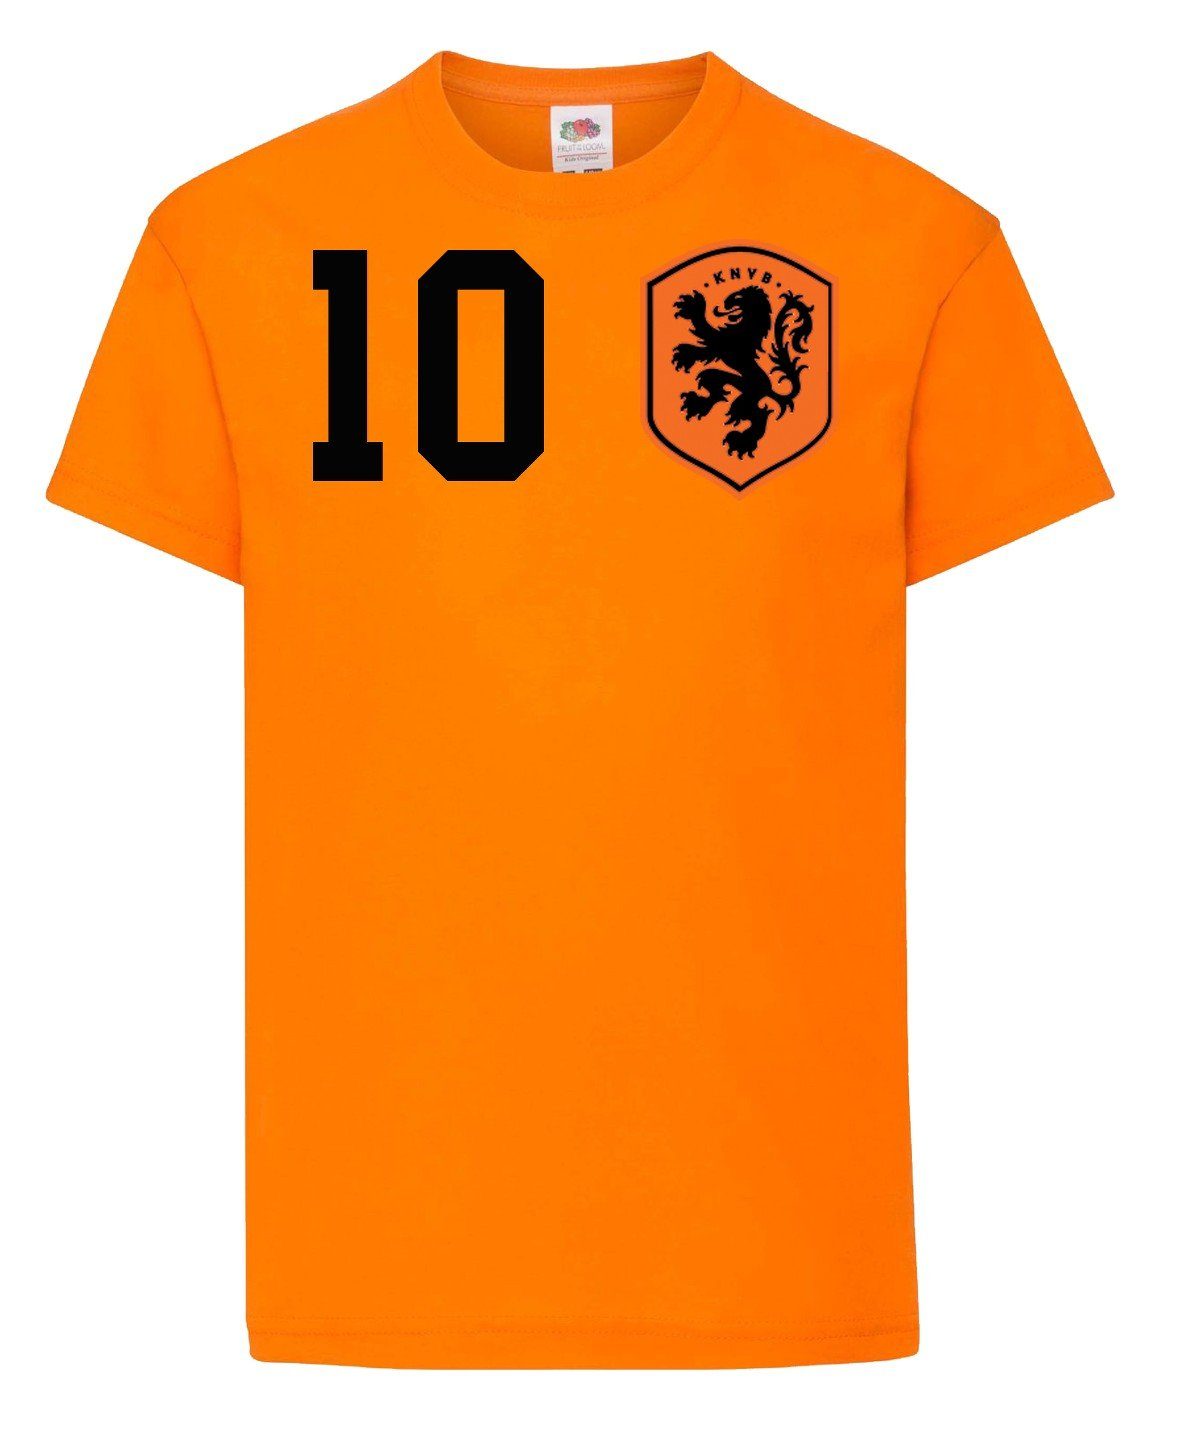 Kinder Trikot Designz im Print T-Shirt Youth Fußball Niederlande Look T-Shirt trendigem mit